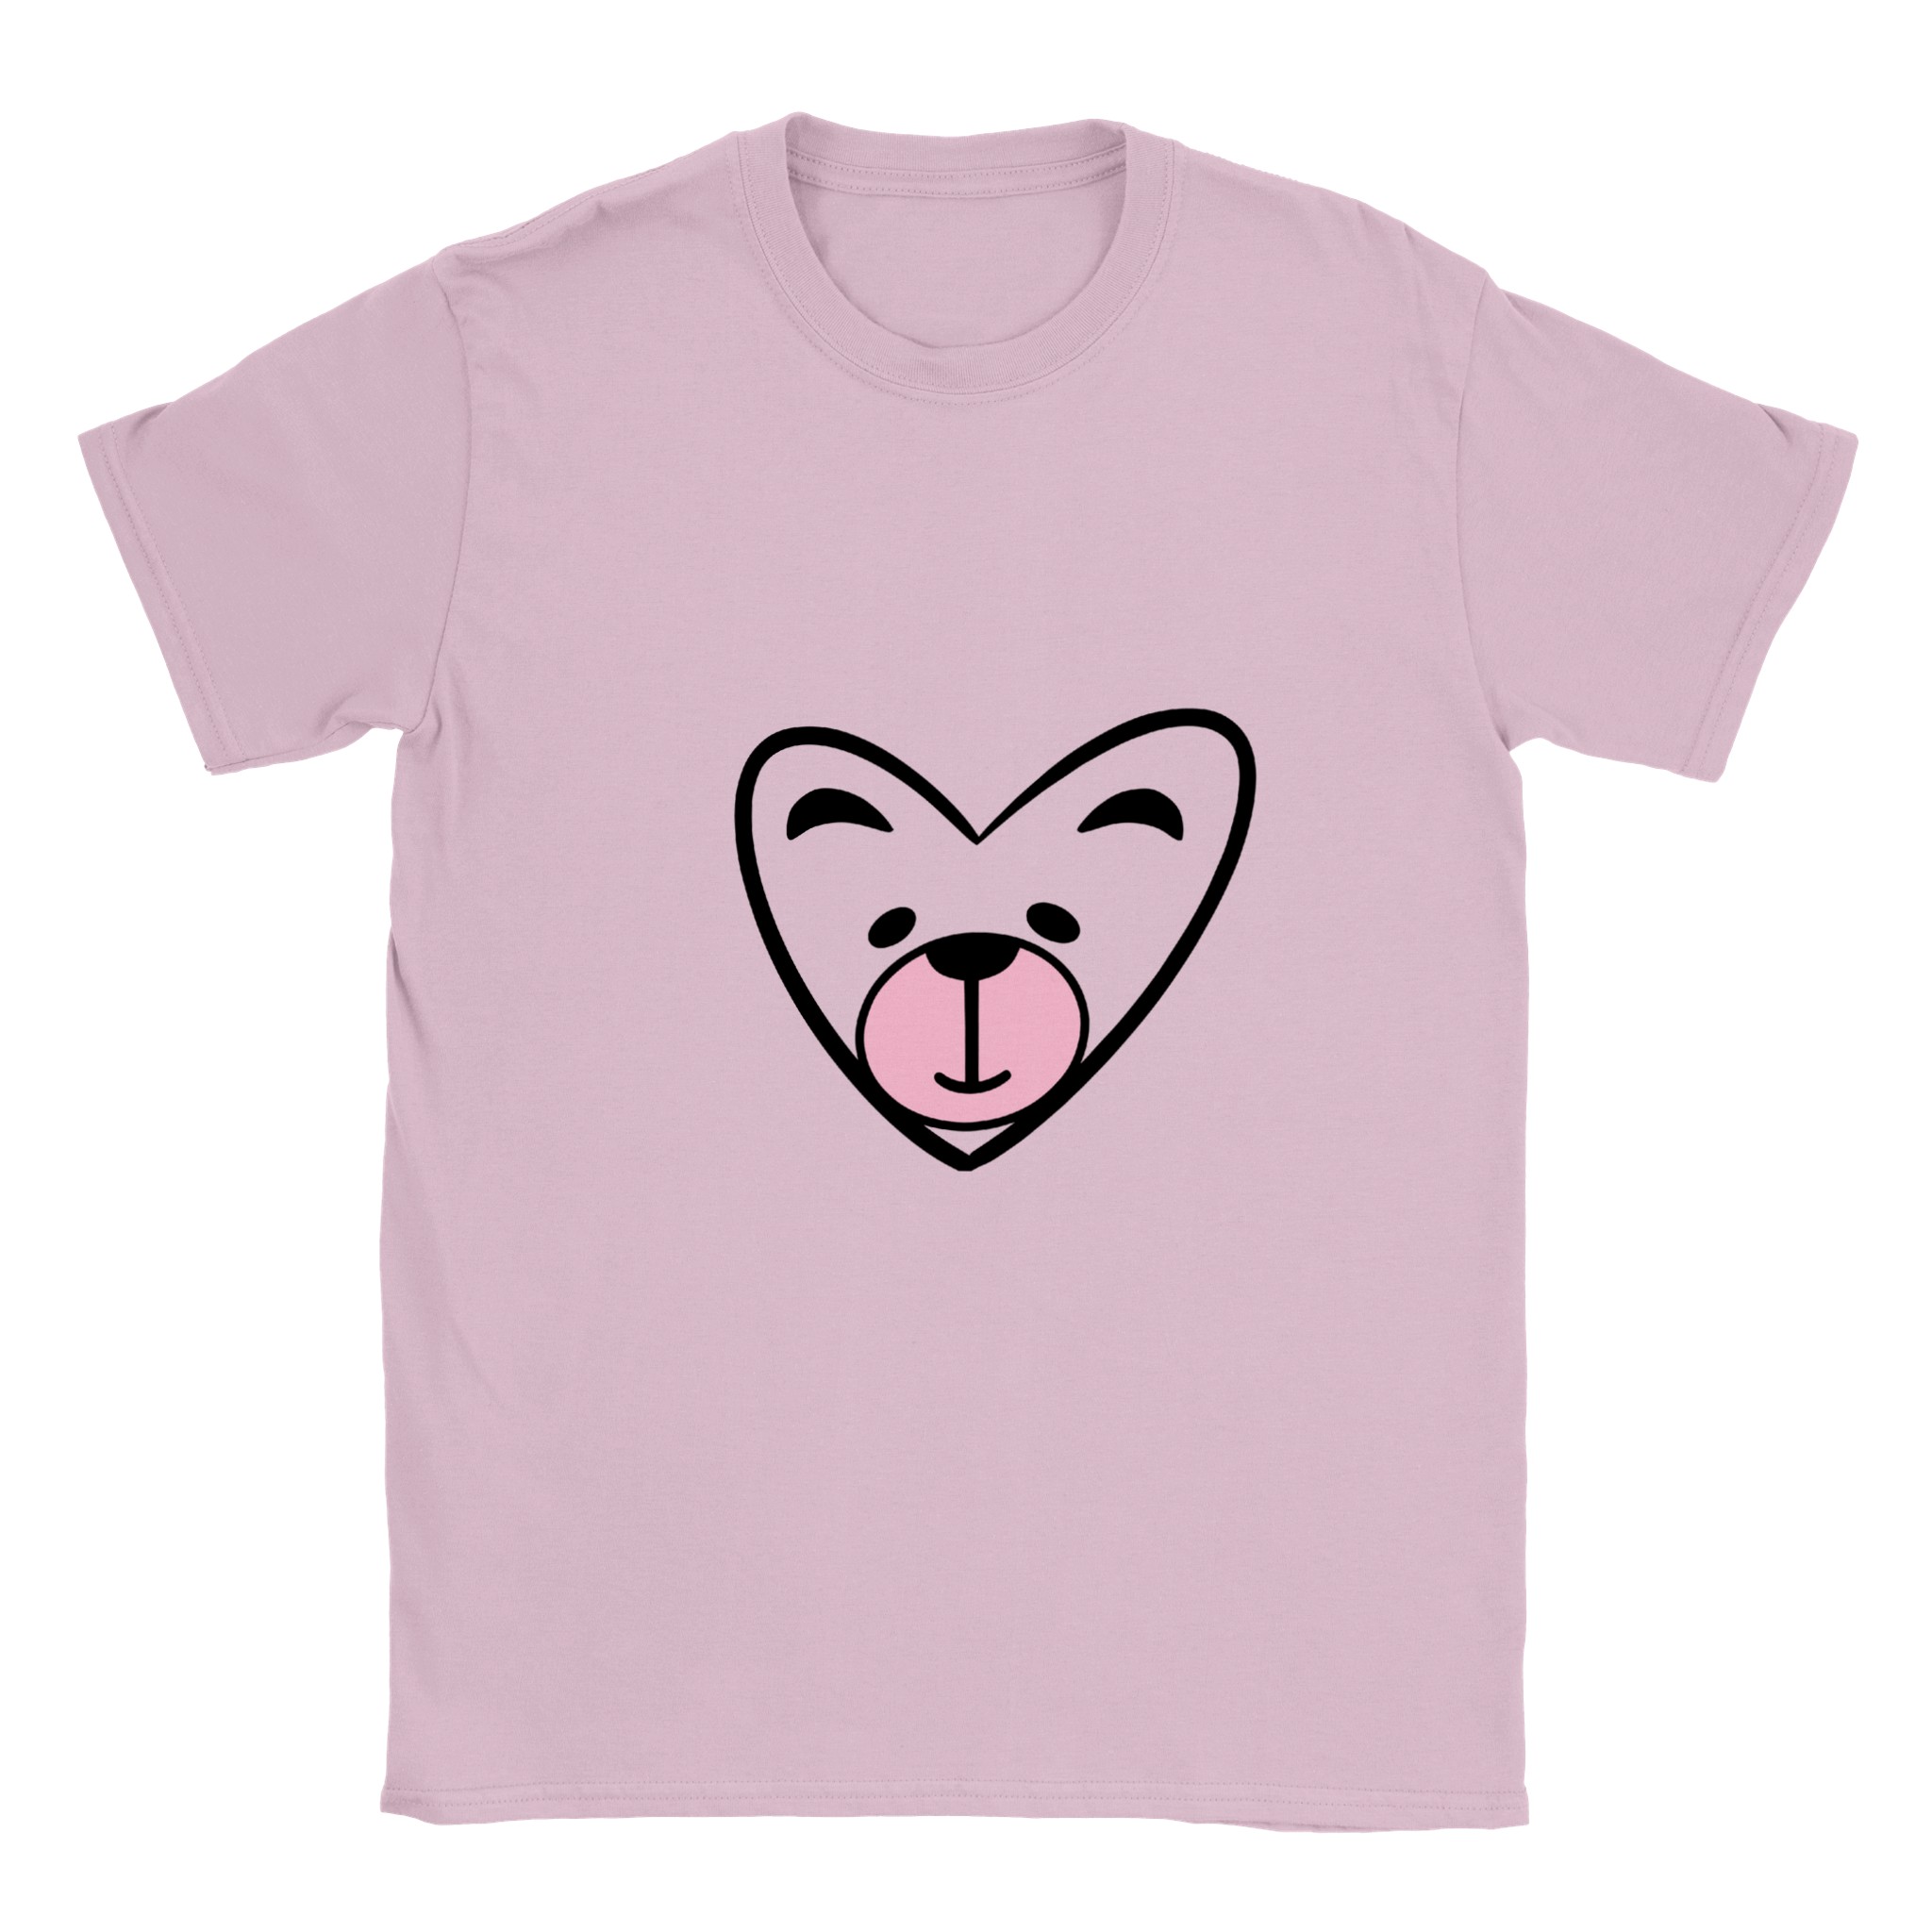 Classic Kids Crewneck T-shirt - Love Heart Bear